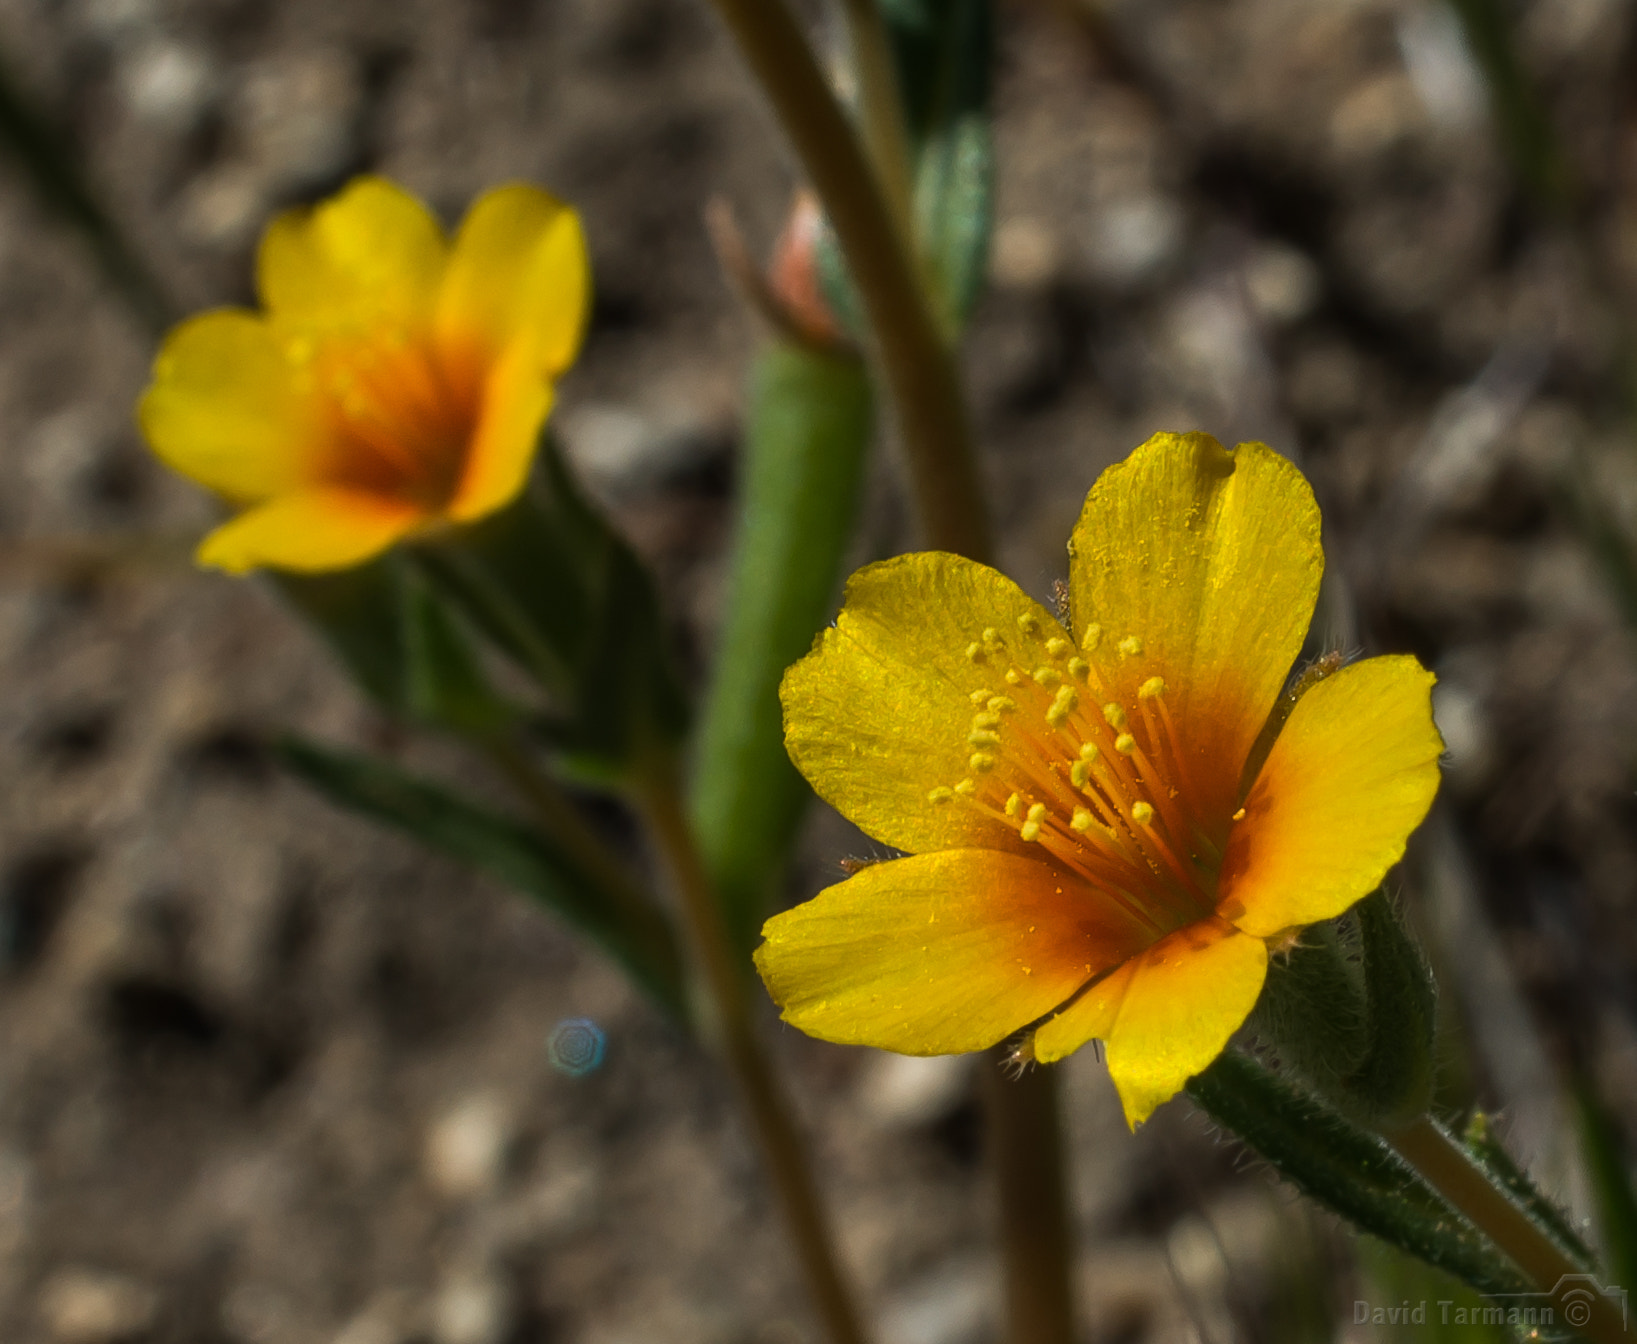 Nikon D800 + AF Zoom-Nikkor 28-85mm f/3.5-4.5 sample photo. Anza-borrego wild flower photography